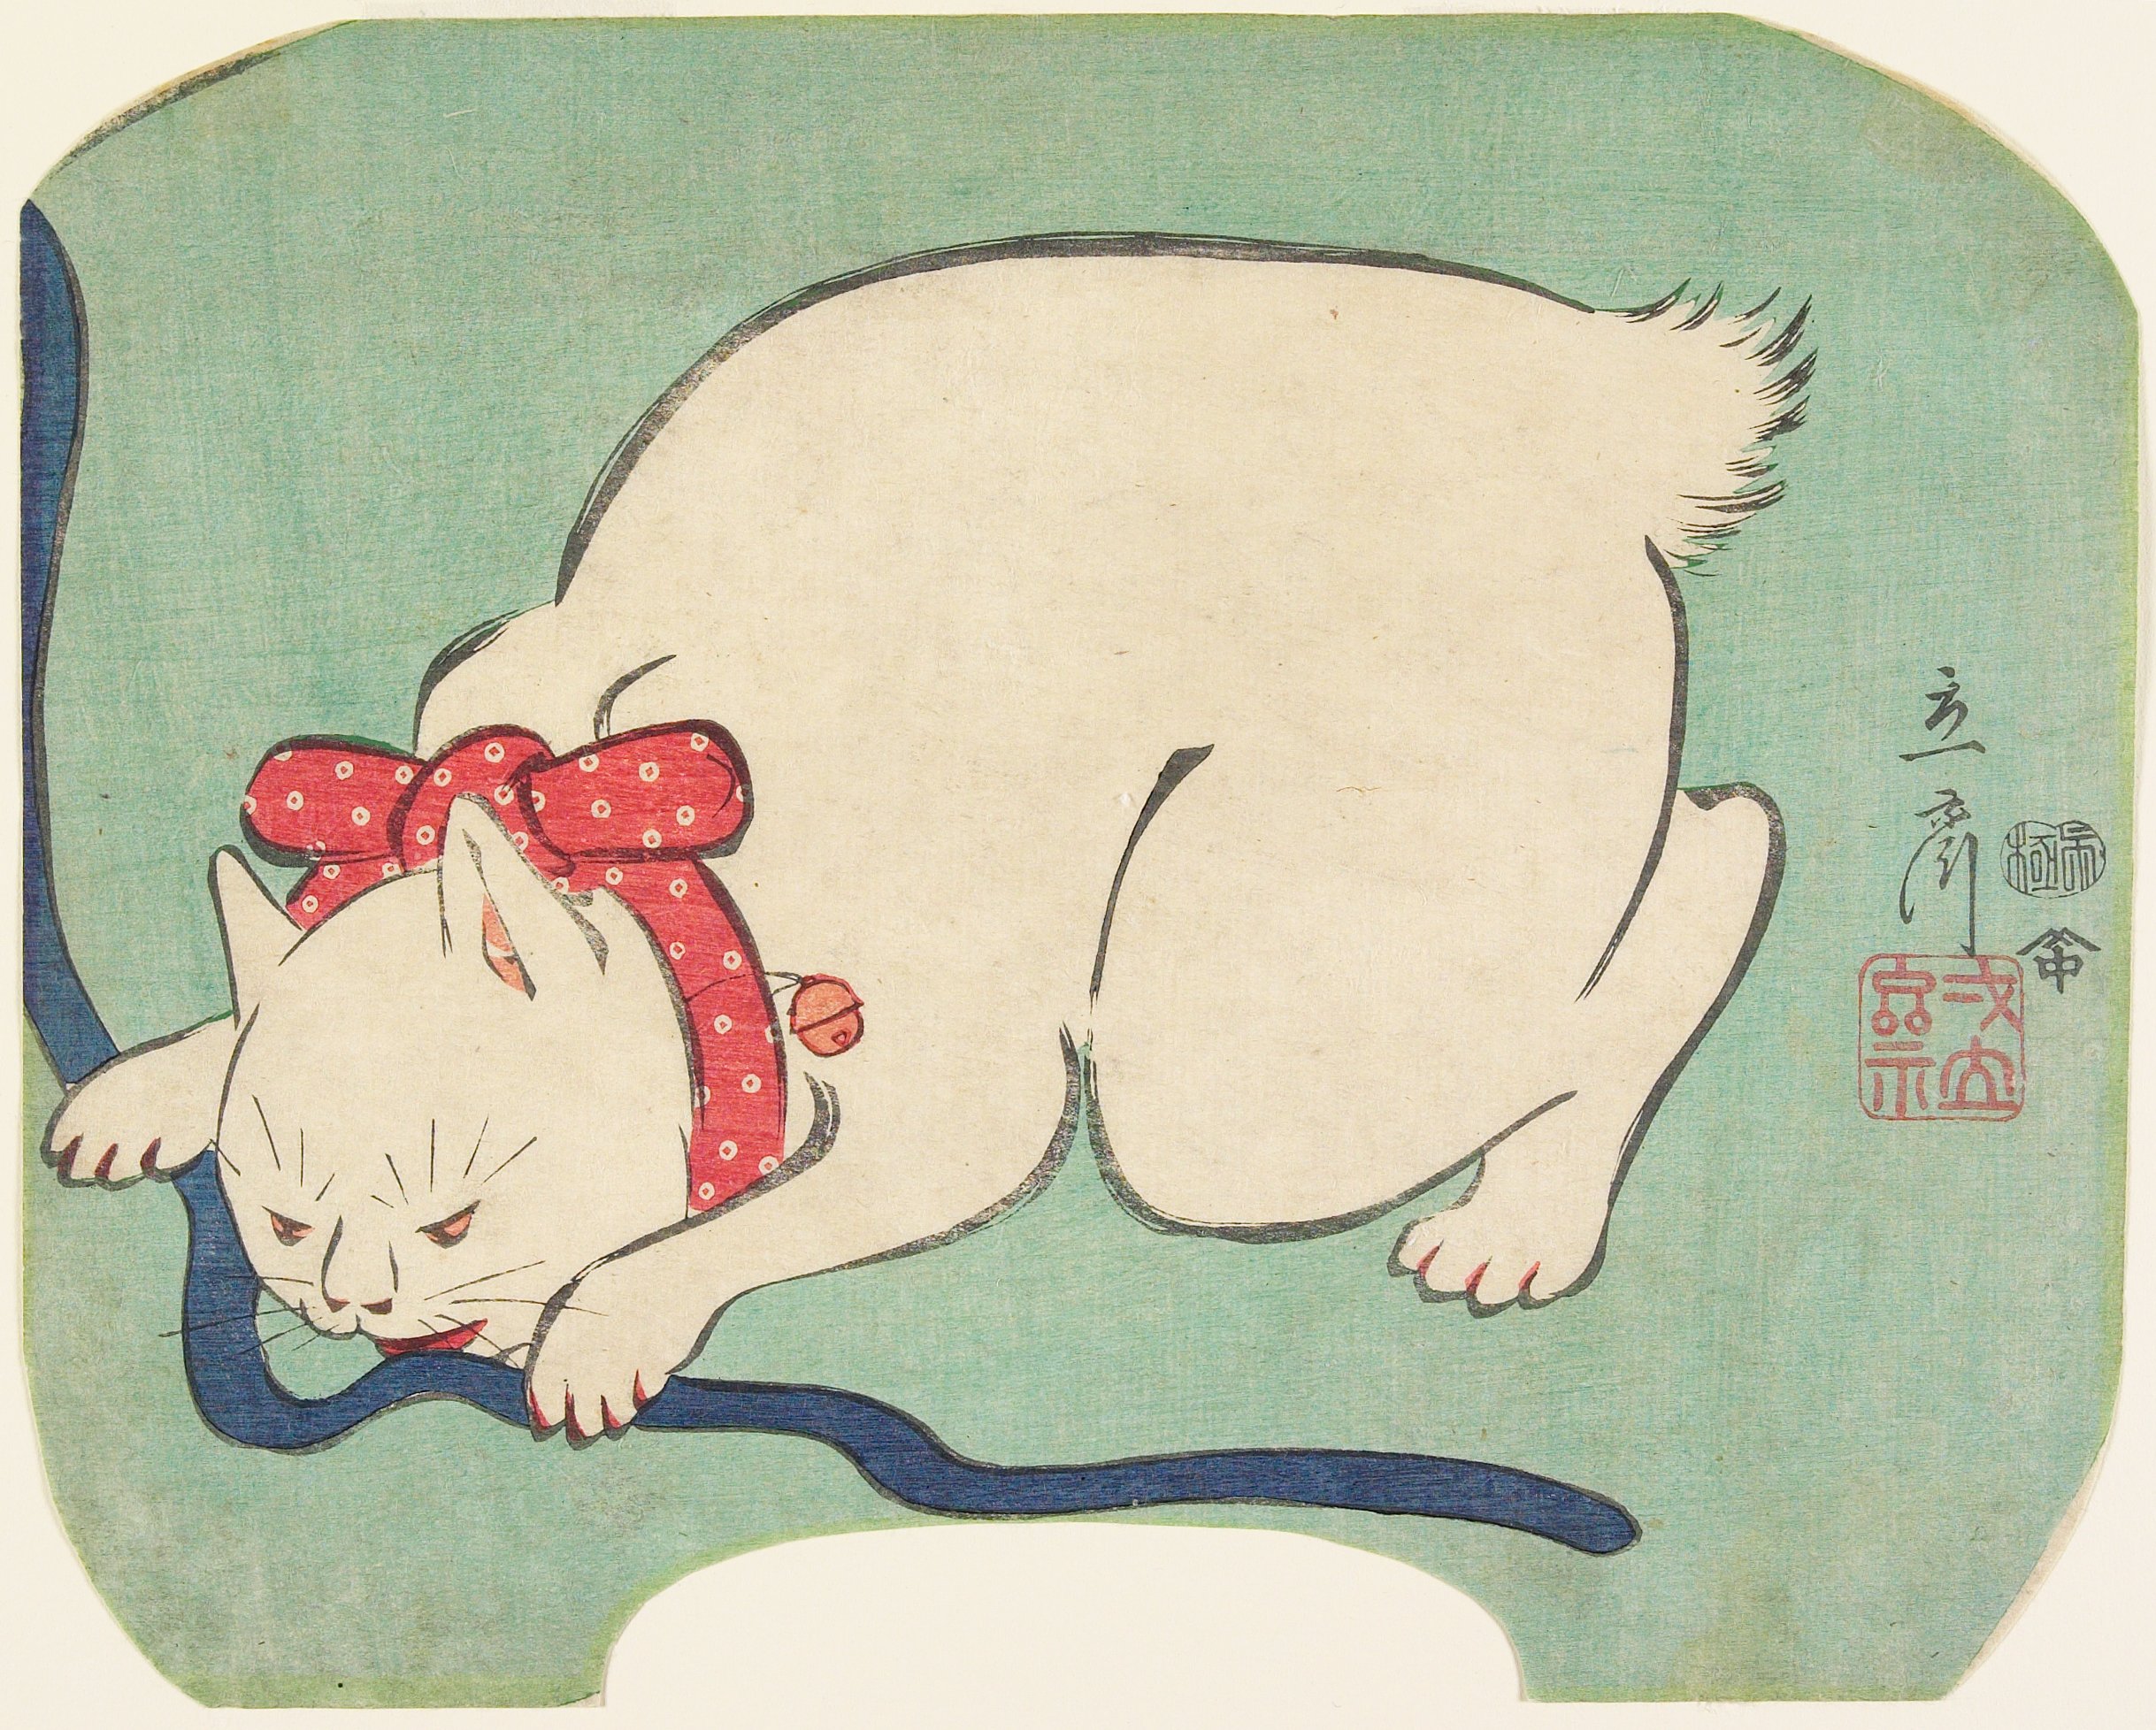 玩繩子的白貓 by Hiroshige II - 1863 - 21.3 × 26.7 cm 